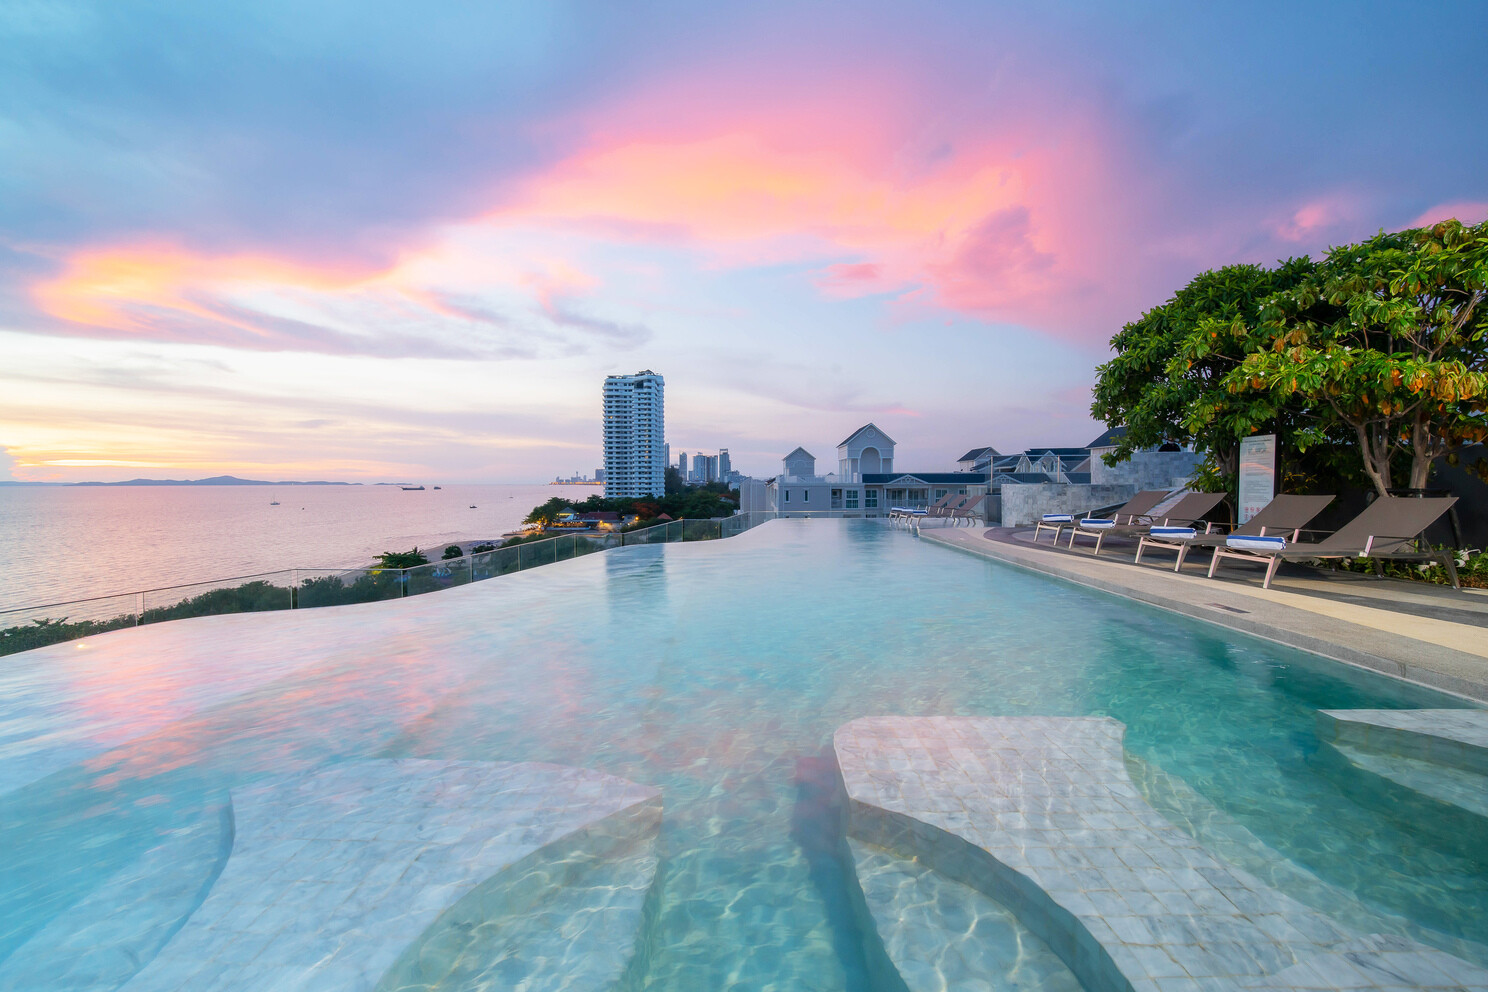 "ไทยเที่ยวไทย ไปกับเบสท์ เวสเทิร์น" ในงานไทยเที่ยวไทย ครั้งที่ 61 พร้อมข้อเสนอห้องพักที่ดีที่สุด เริ่มต้น 800 บาท